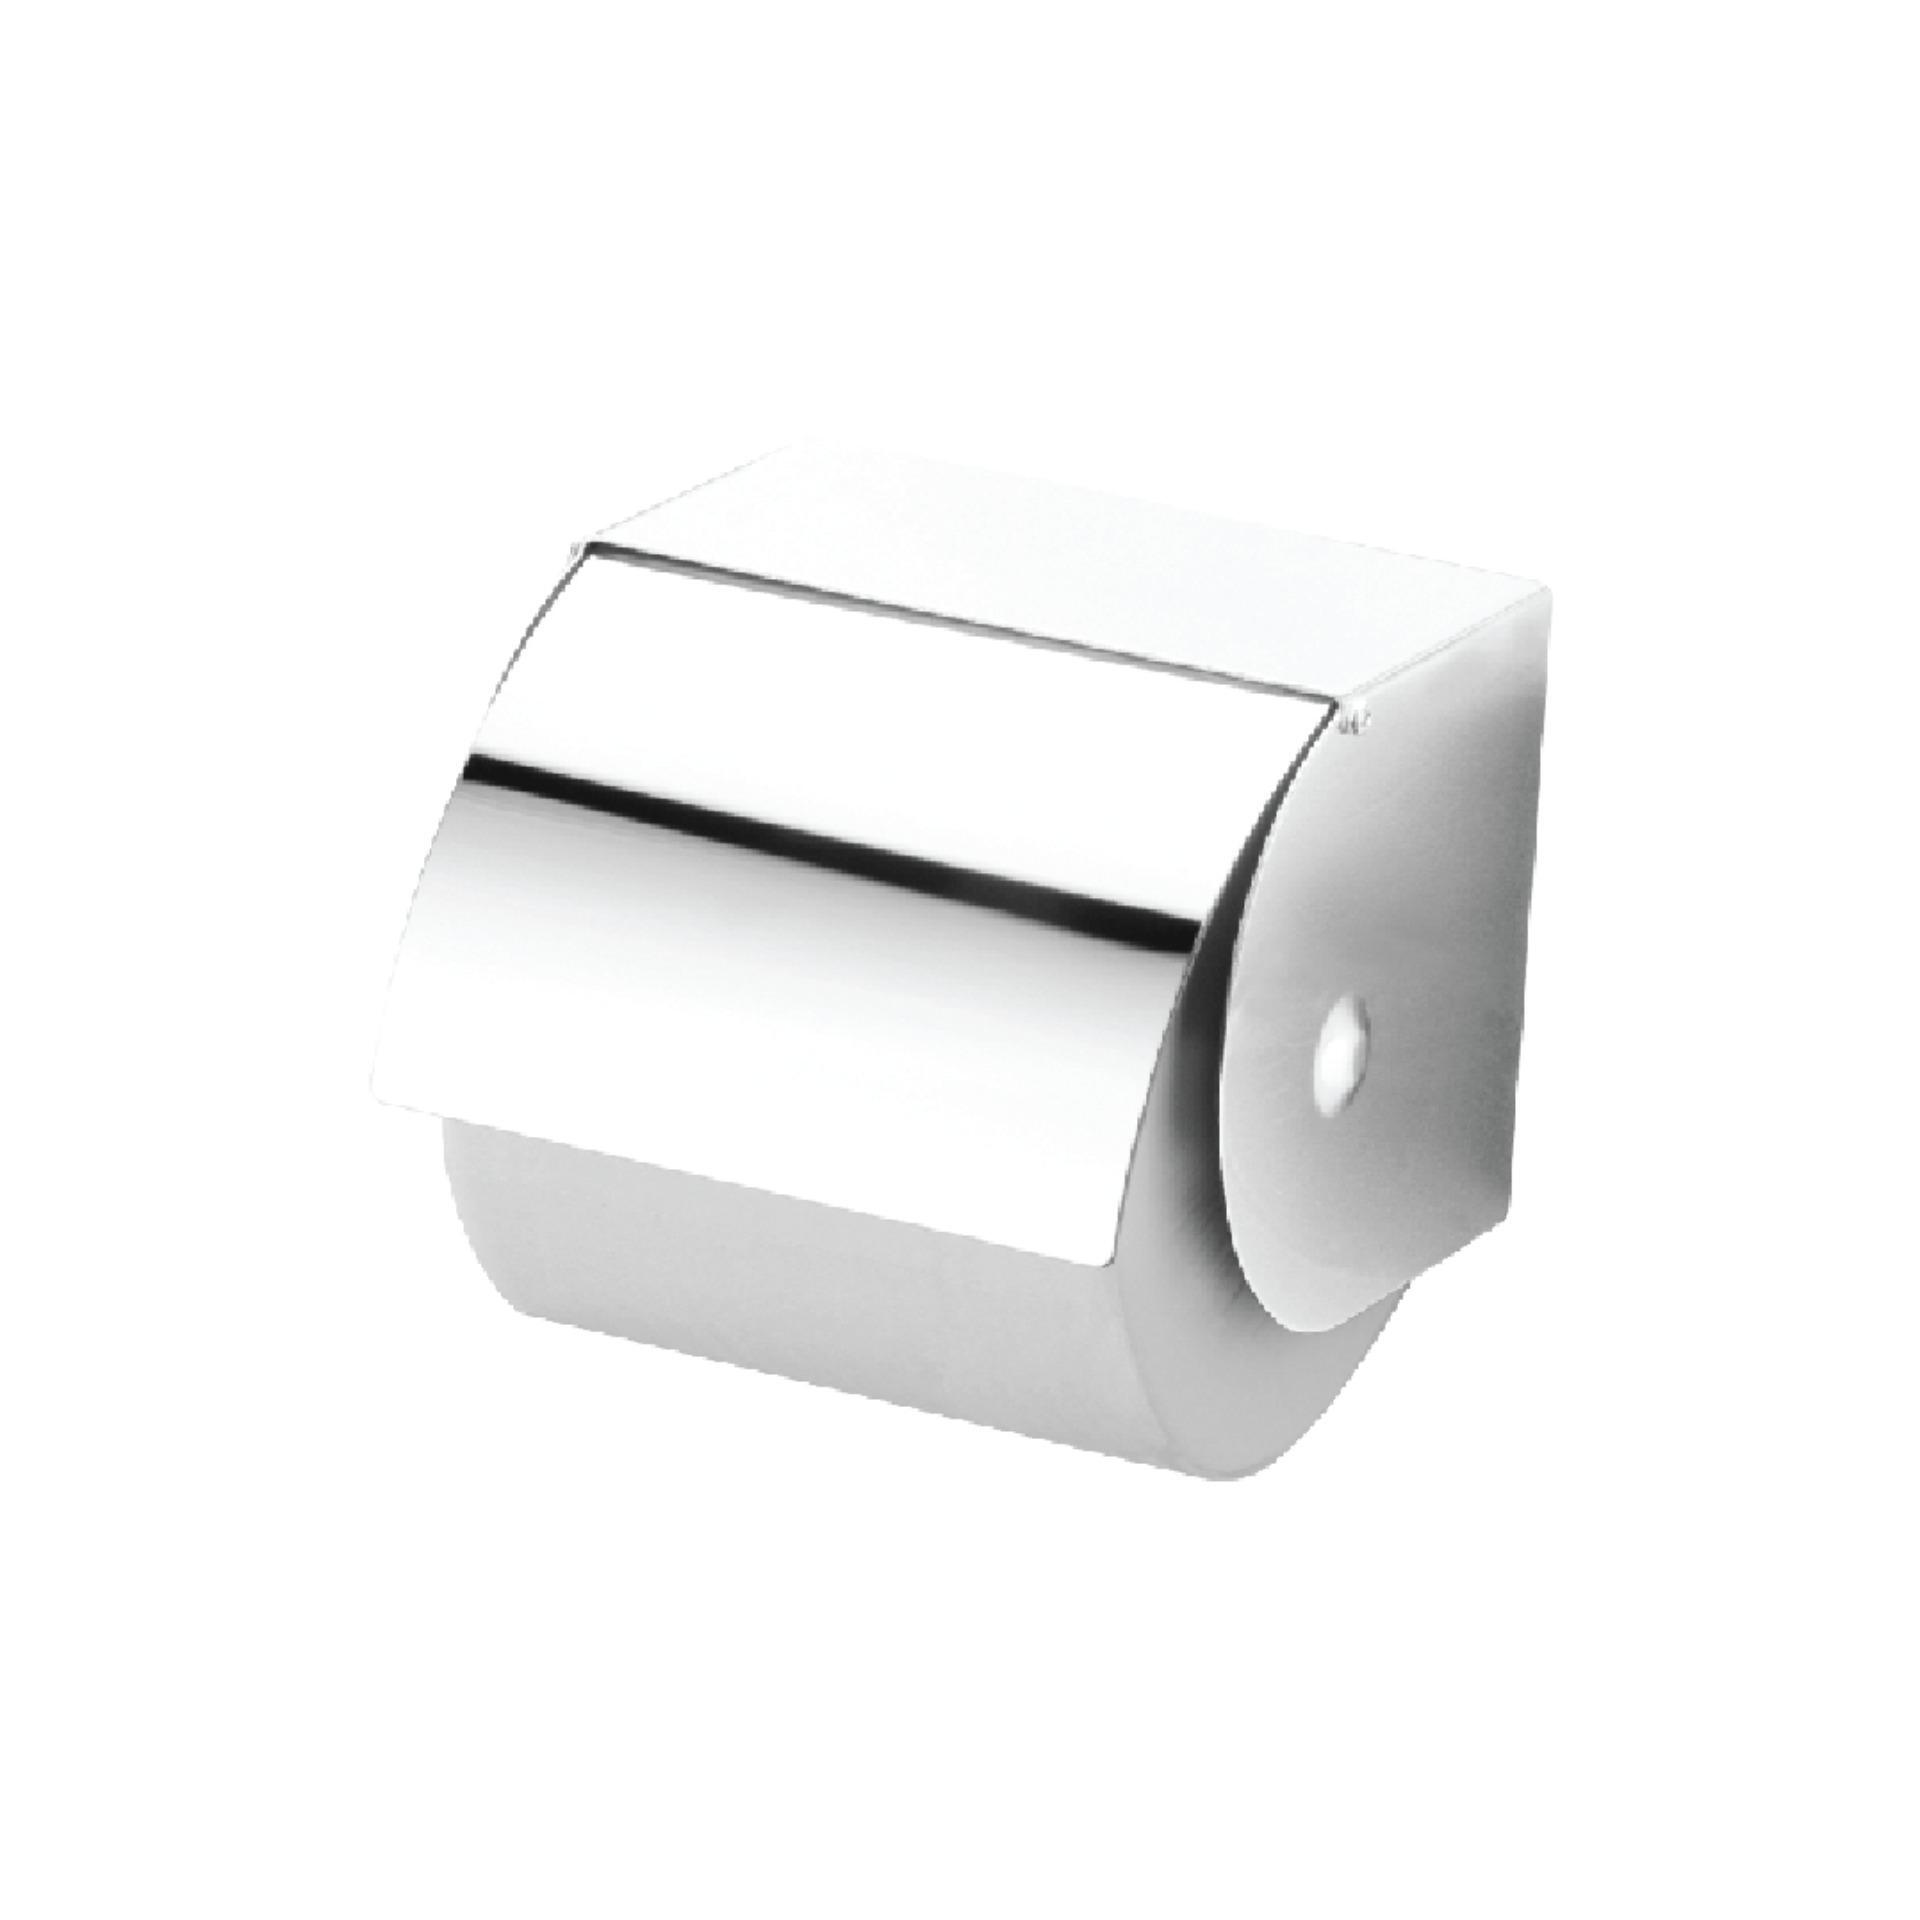 Hộp đựng giấy vệ sinh Atmor TD-8305A/D